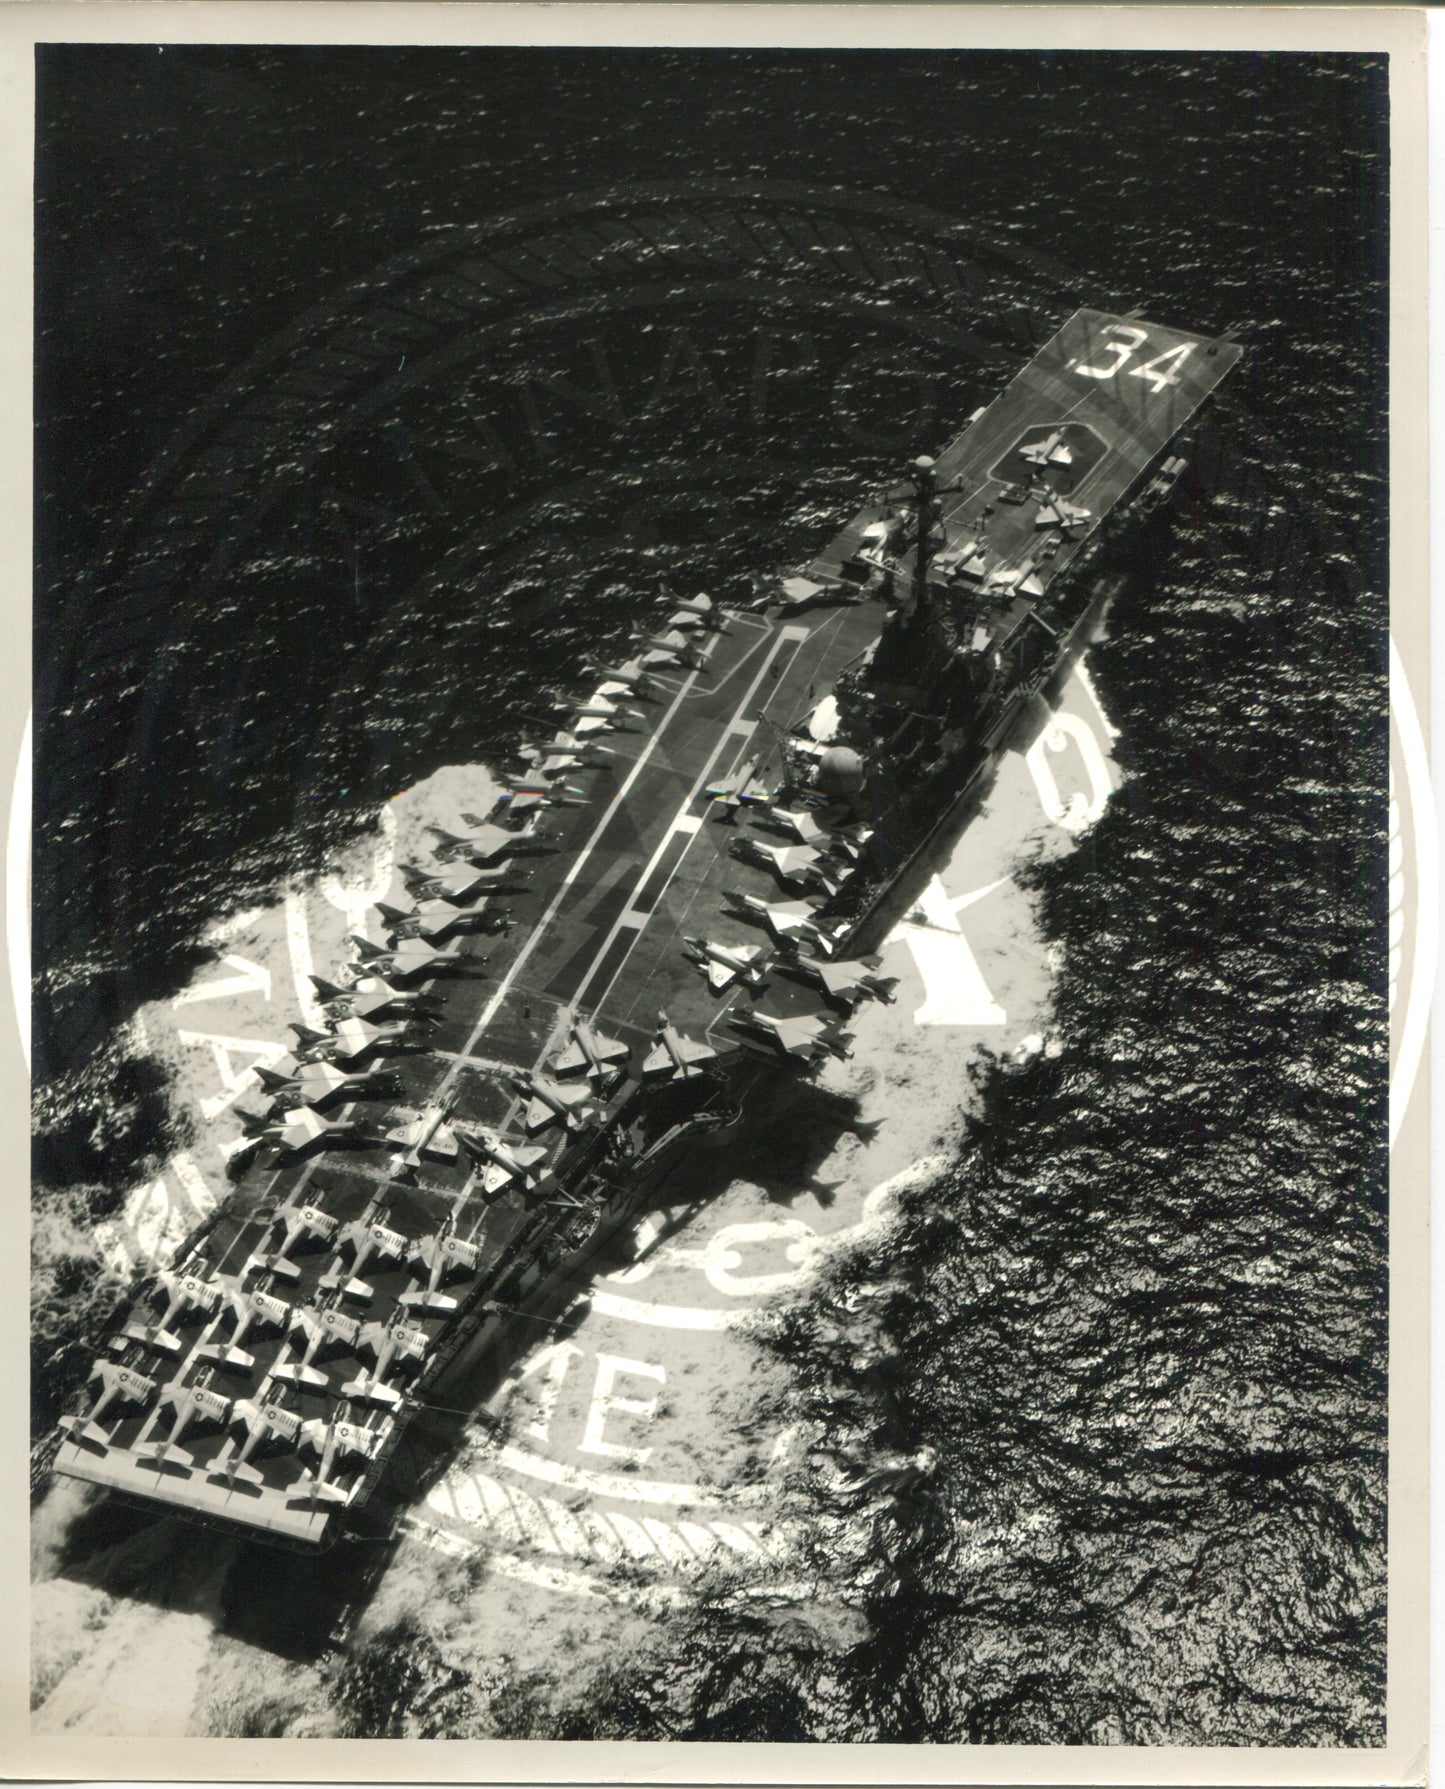 USS Oriskany (CV-34) Aircraft Carrier